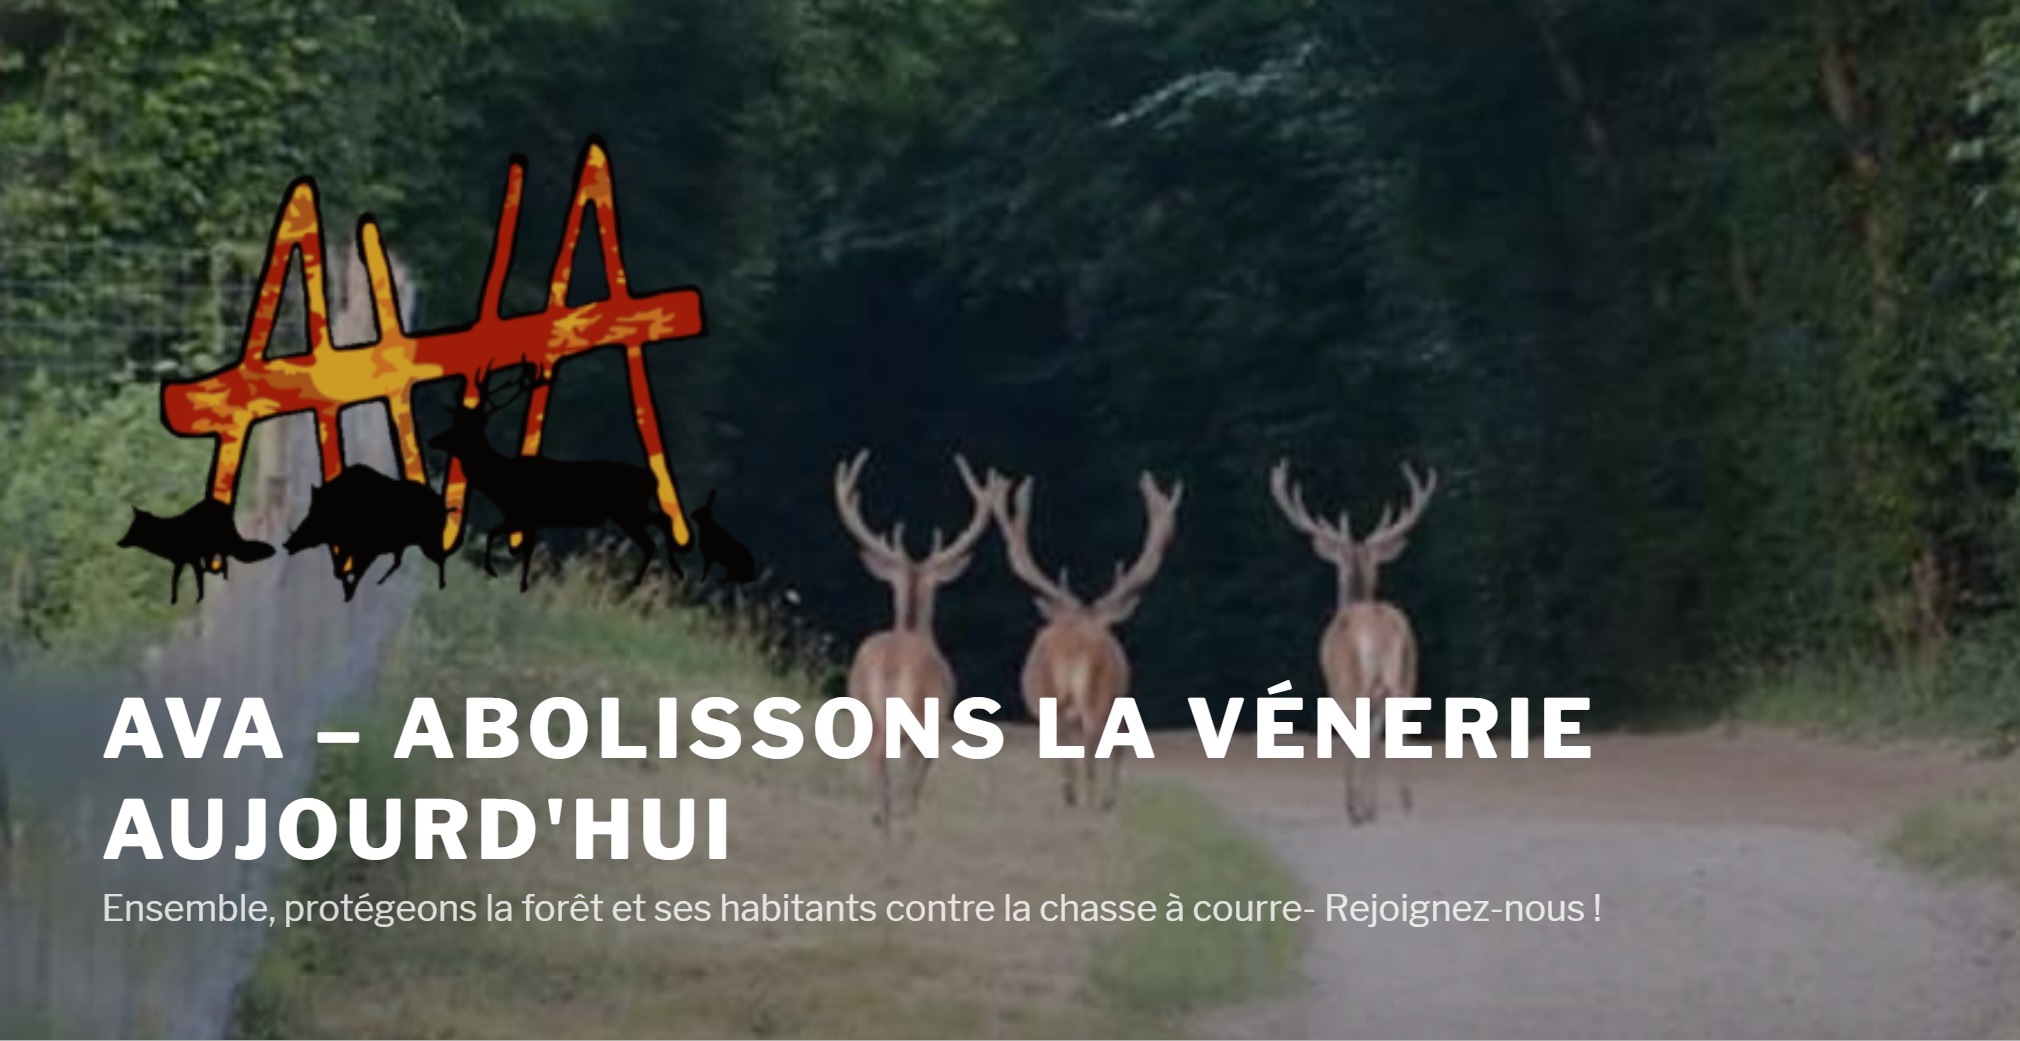 Le collectif AVA (Abolissons la Vénerie Aujourd’hui) signe une tribune contre la chasse à courre sur le site Médiapart – Réseau-Cétacés partenaire